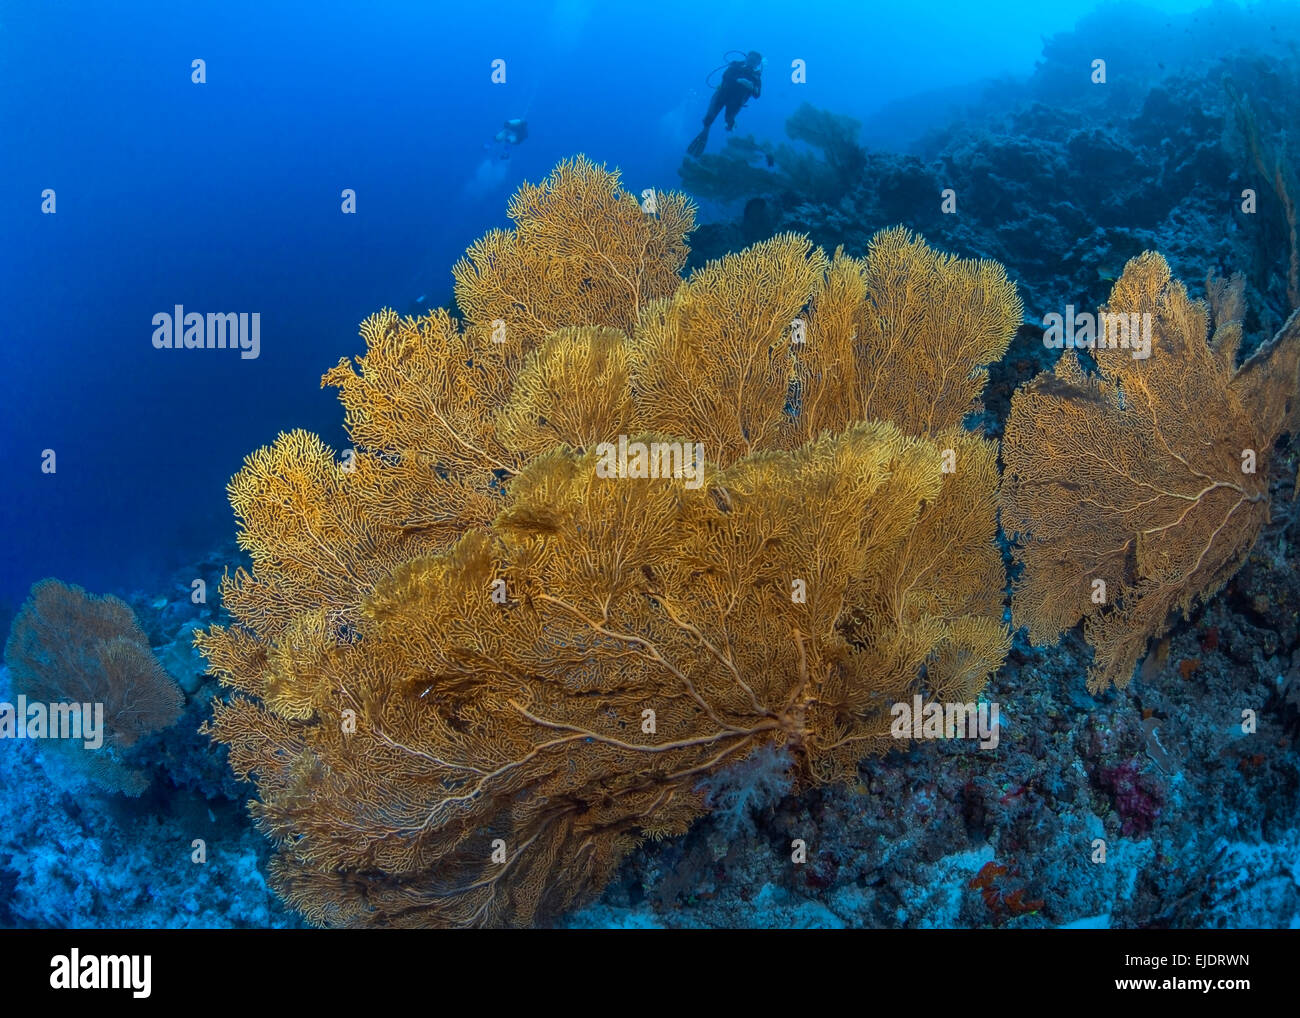 Grandi gorgonie gialle appassionati di mare sulla parete corallina con subacquei in background. Spratly Isands, sul Mare della Cina del Sud. Foto Stock